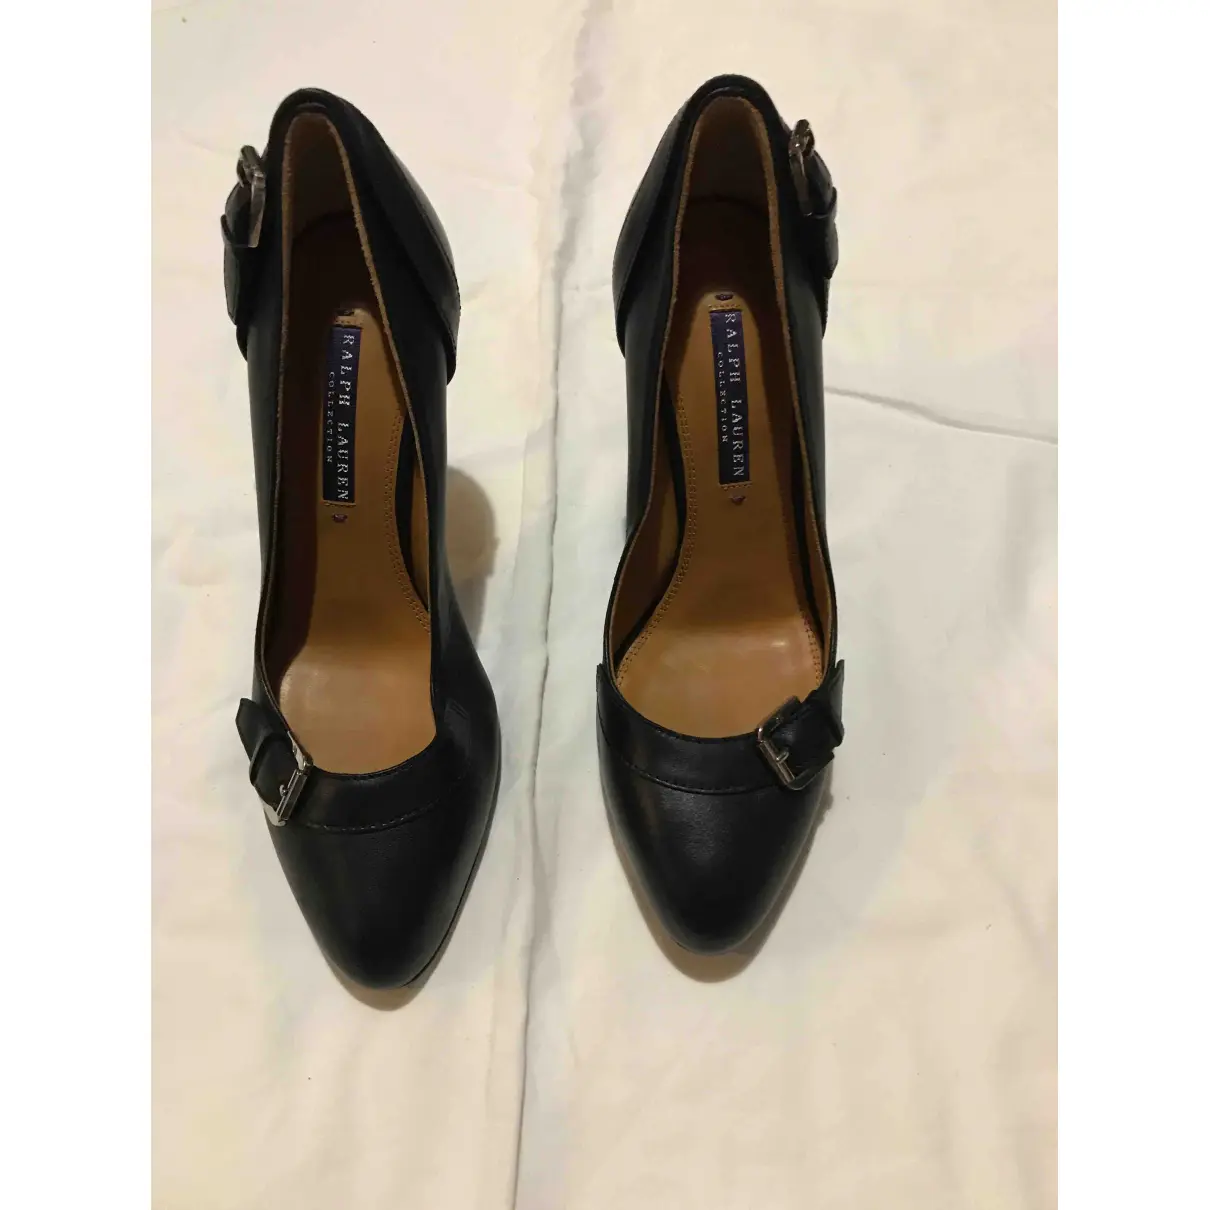 Buy Ralph Lauren Leather heels online